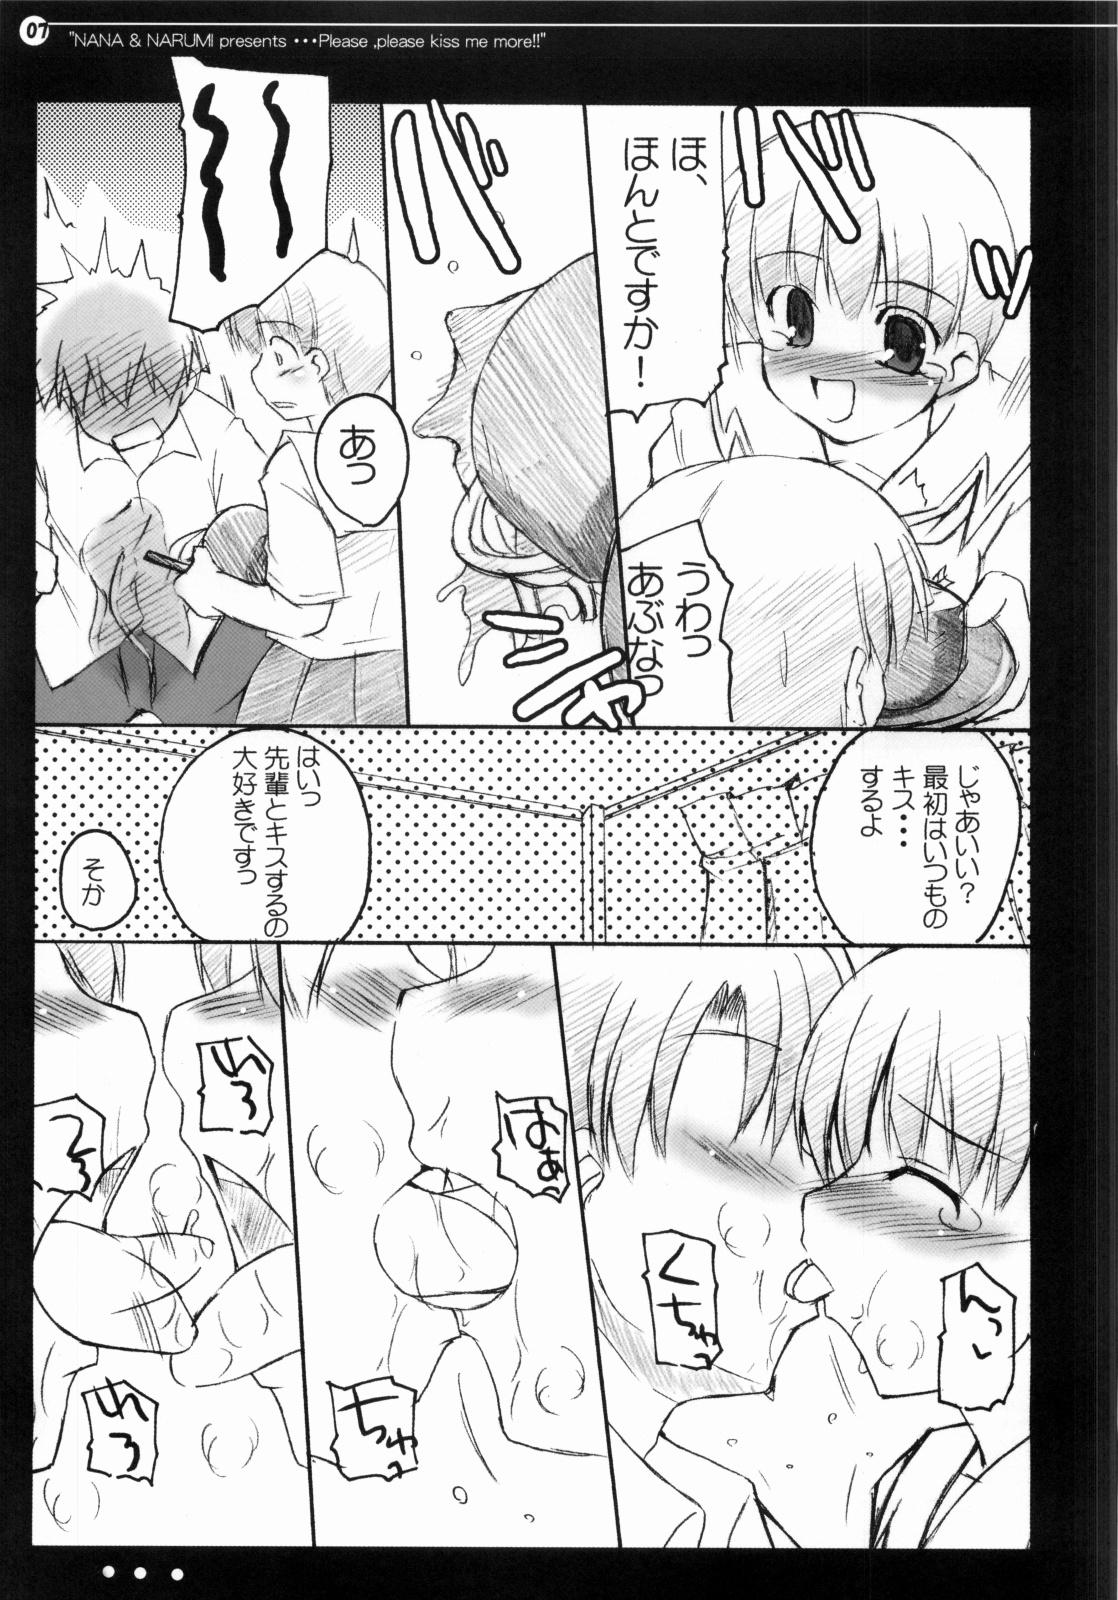 Fantasy Nana to Narumi no Motto Kisu Shite!! - Kimikiss Play - Page 6